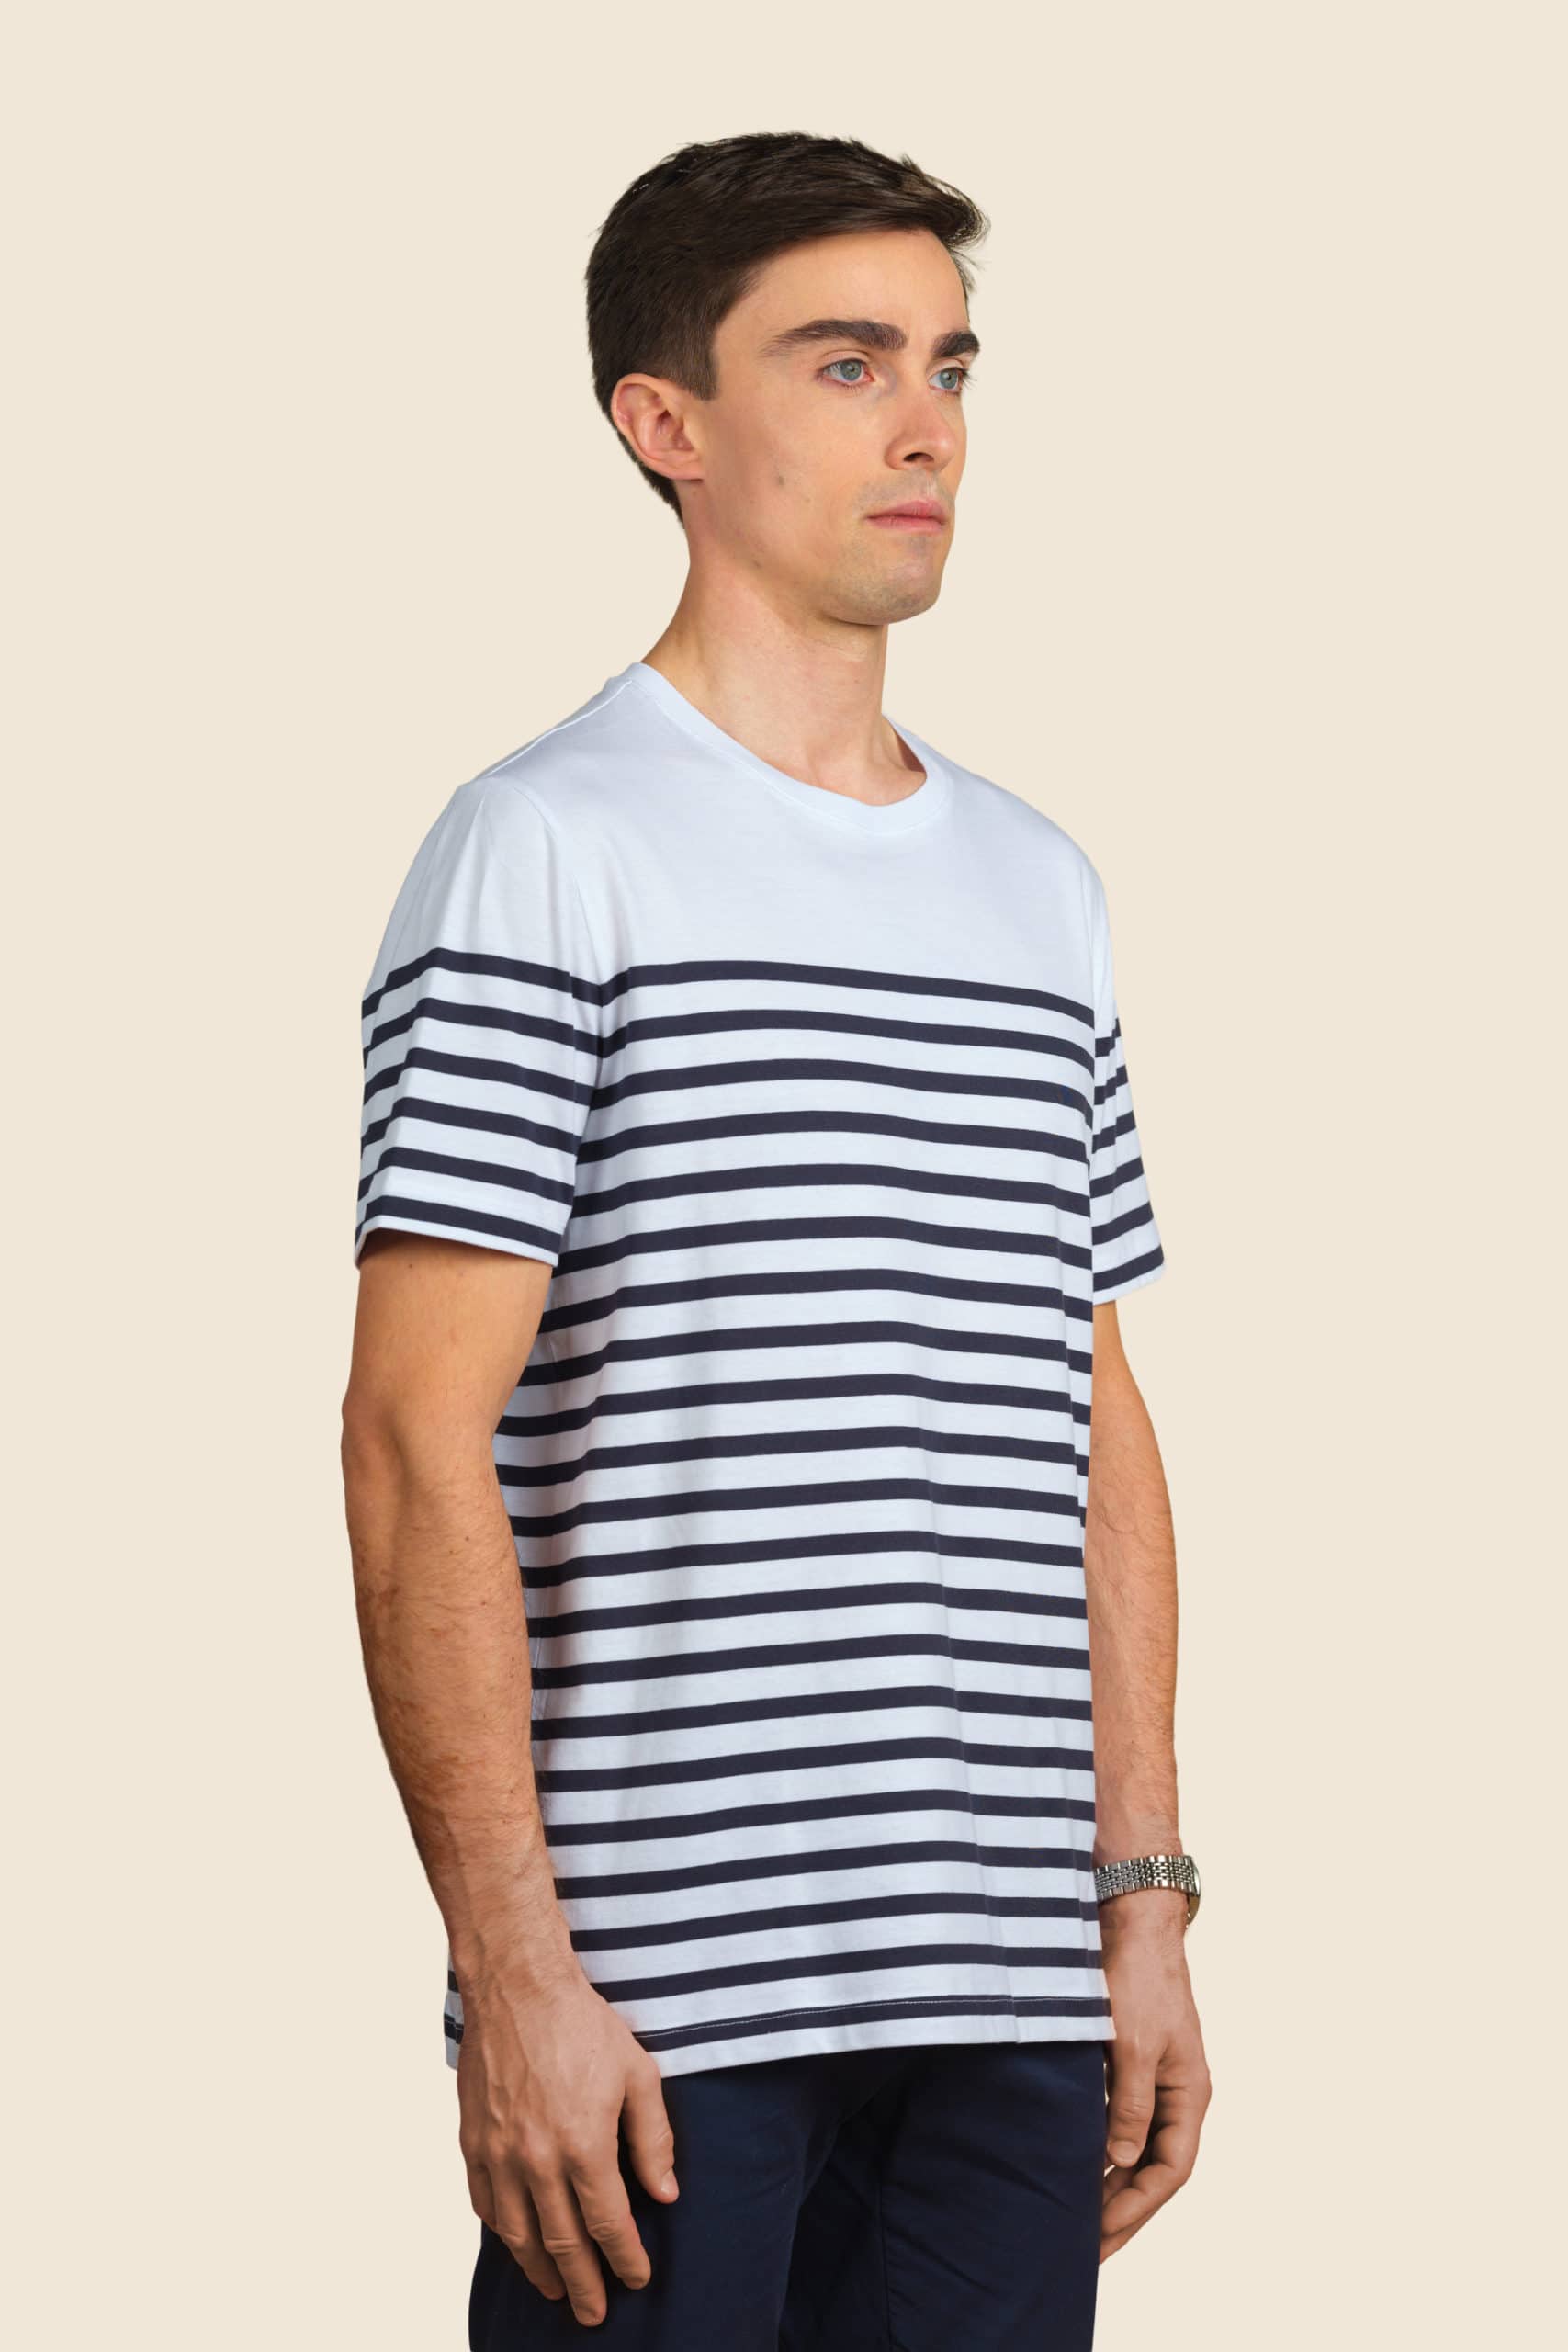 t-shirt bio marinière homme personnalisable - Icone Design